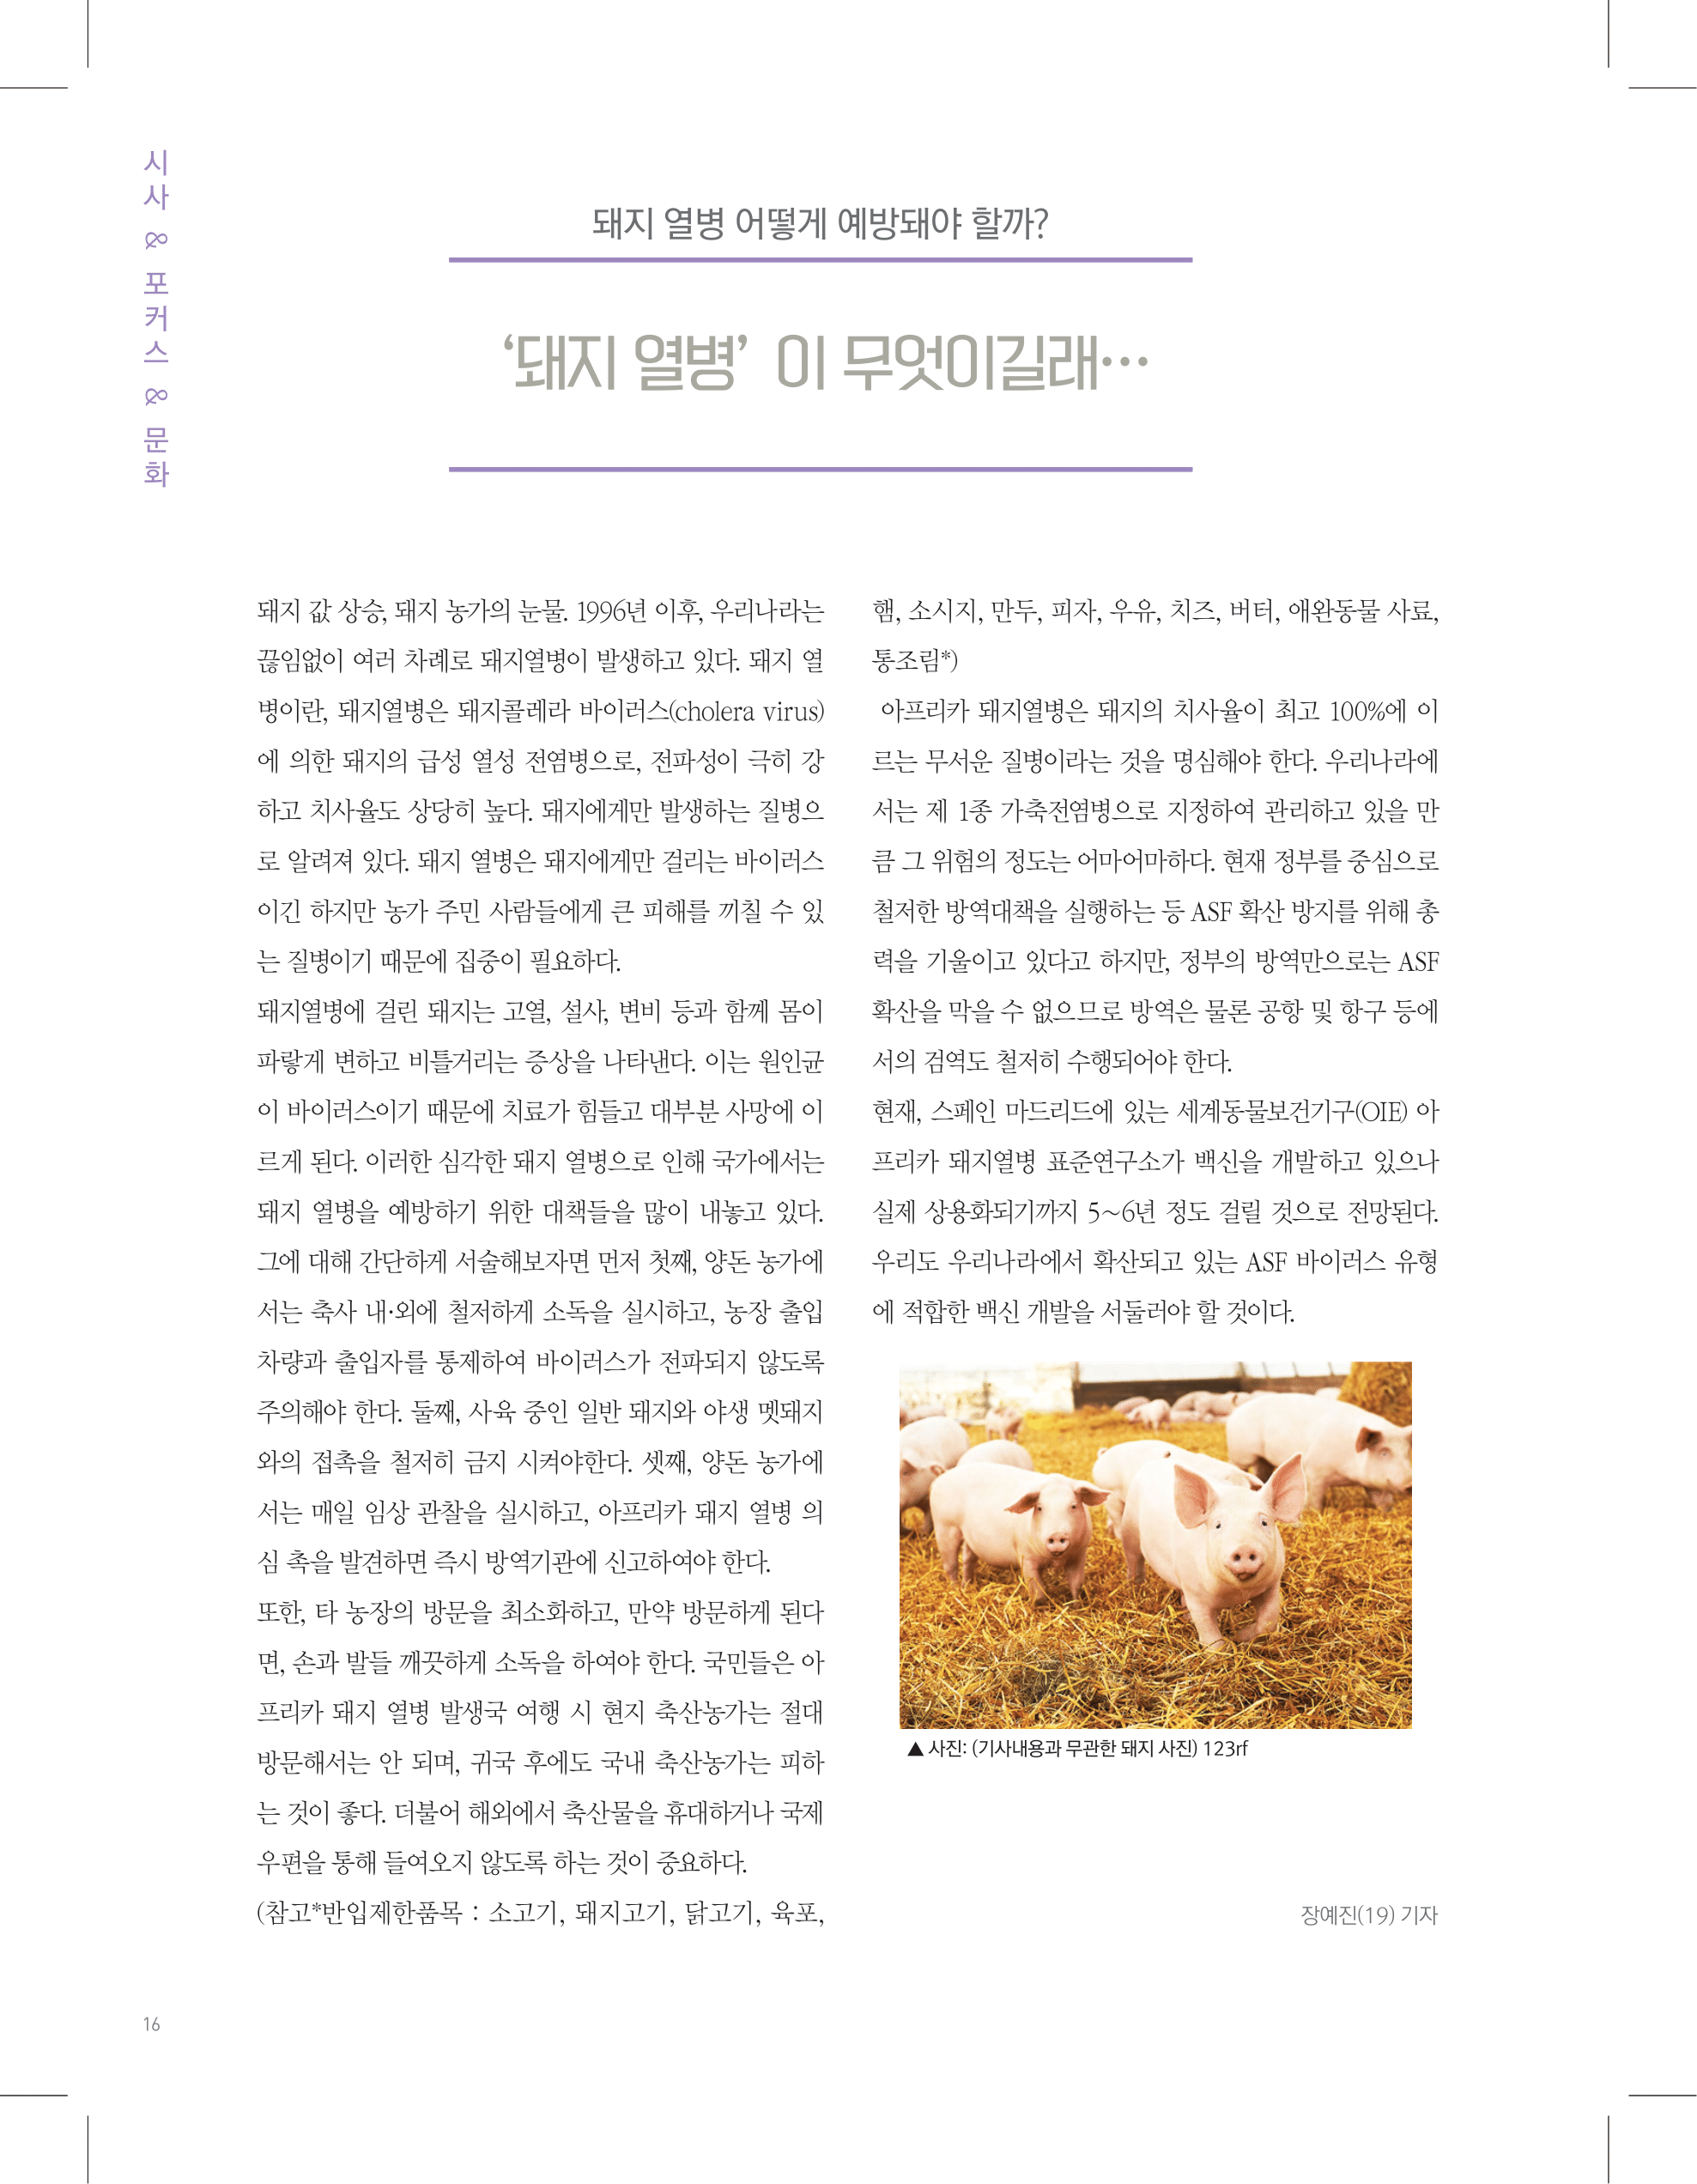 뜻새김 신문 74호 16